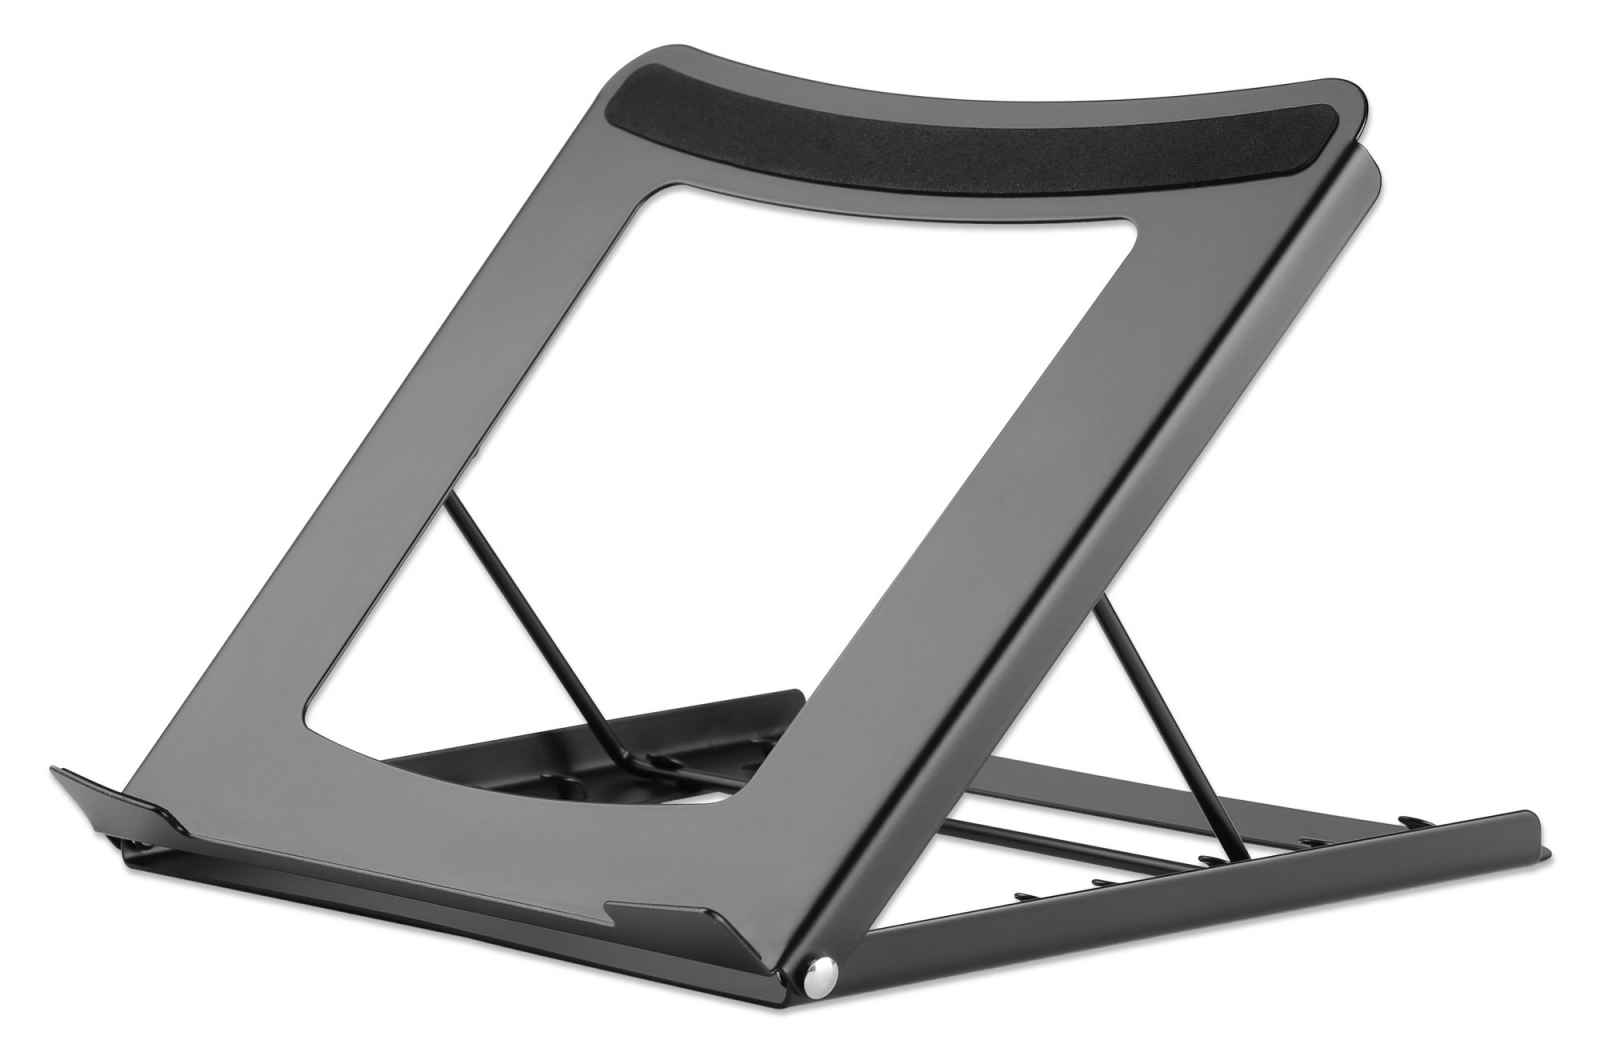 Soporte elevador portátil para laptop, ligero y ajustable, ergonómico,  plegable, compatible con Apple MacBook Pro y Air, HP, Dell, tablet y más